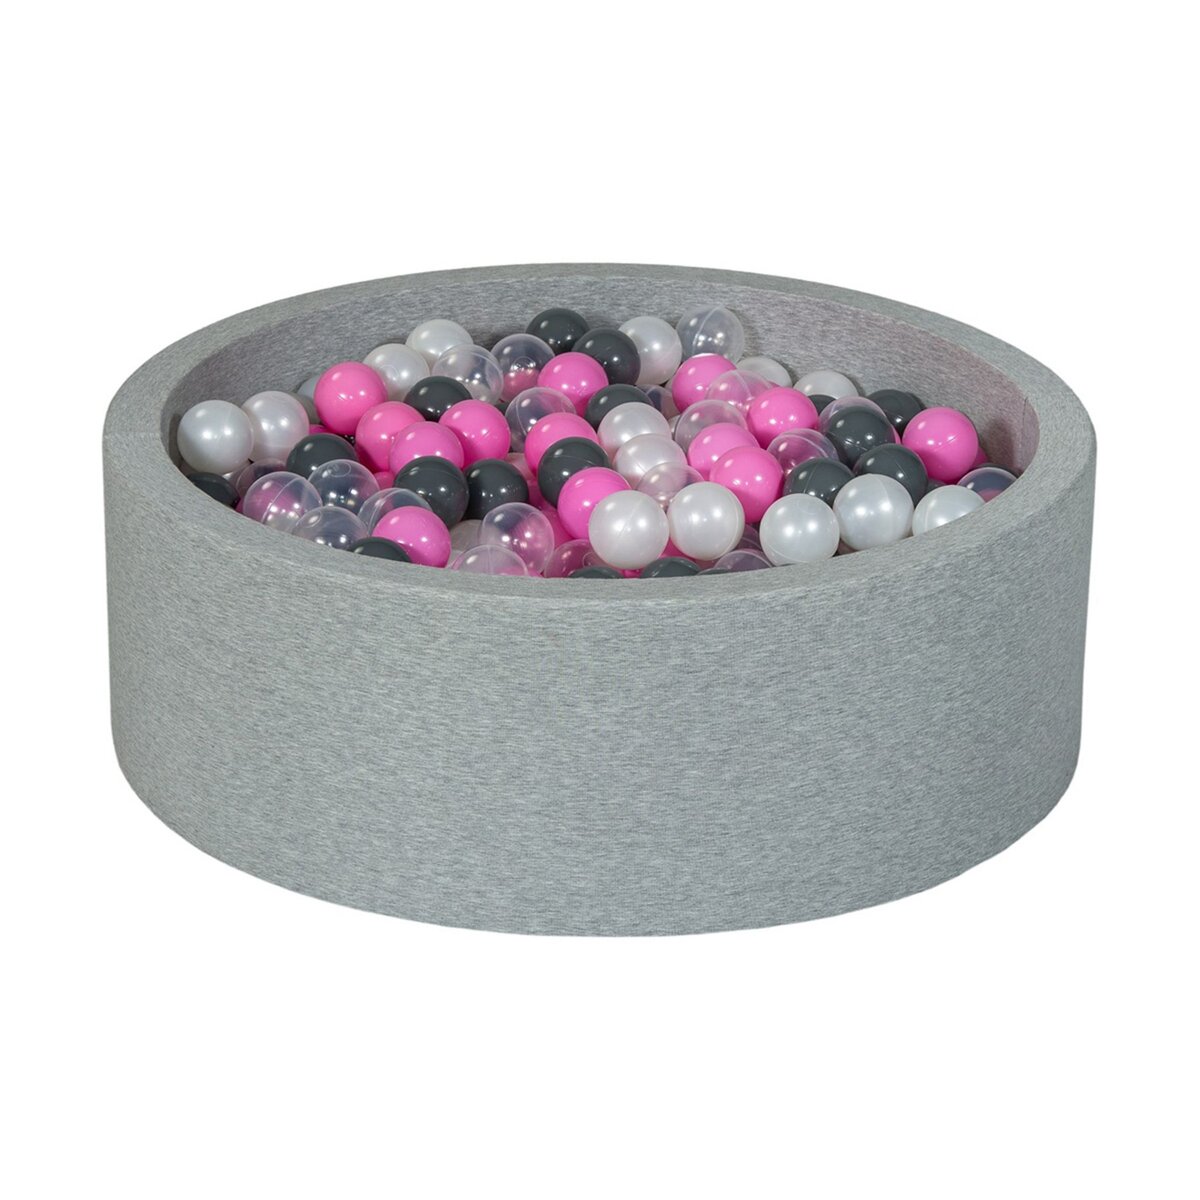  Piscine à balles Aire de jeu + 450 balles perle, transparent, rose clair, gris